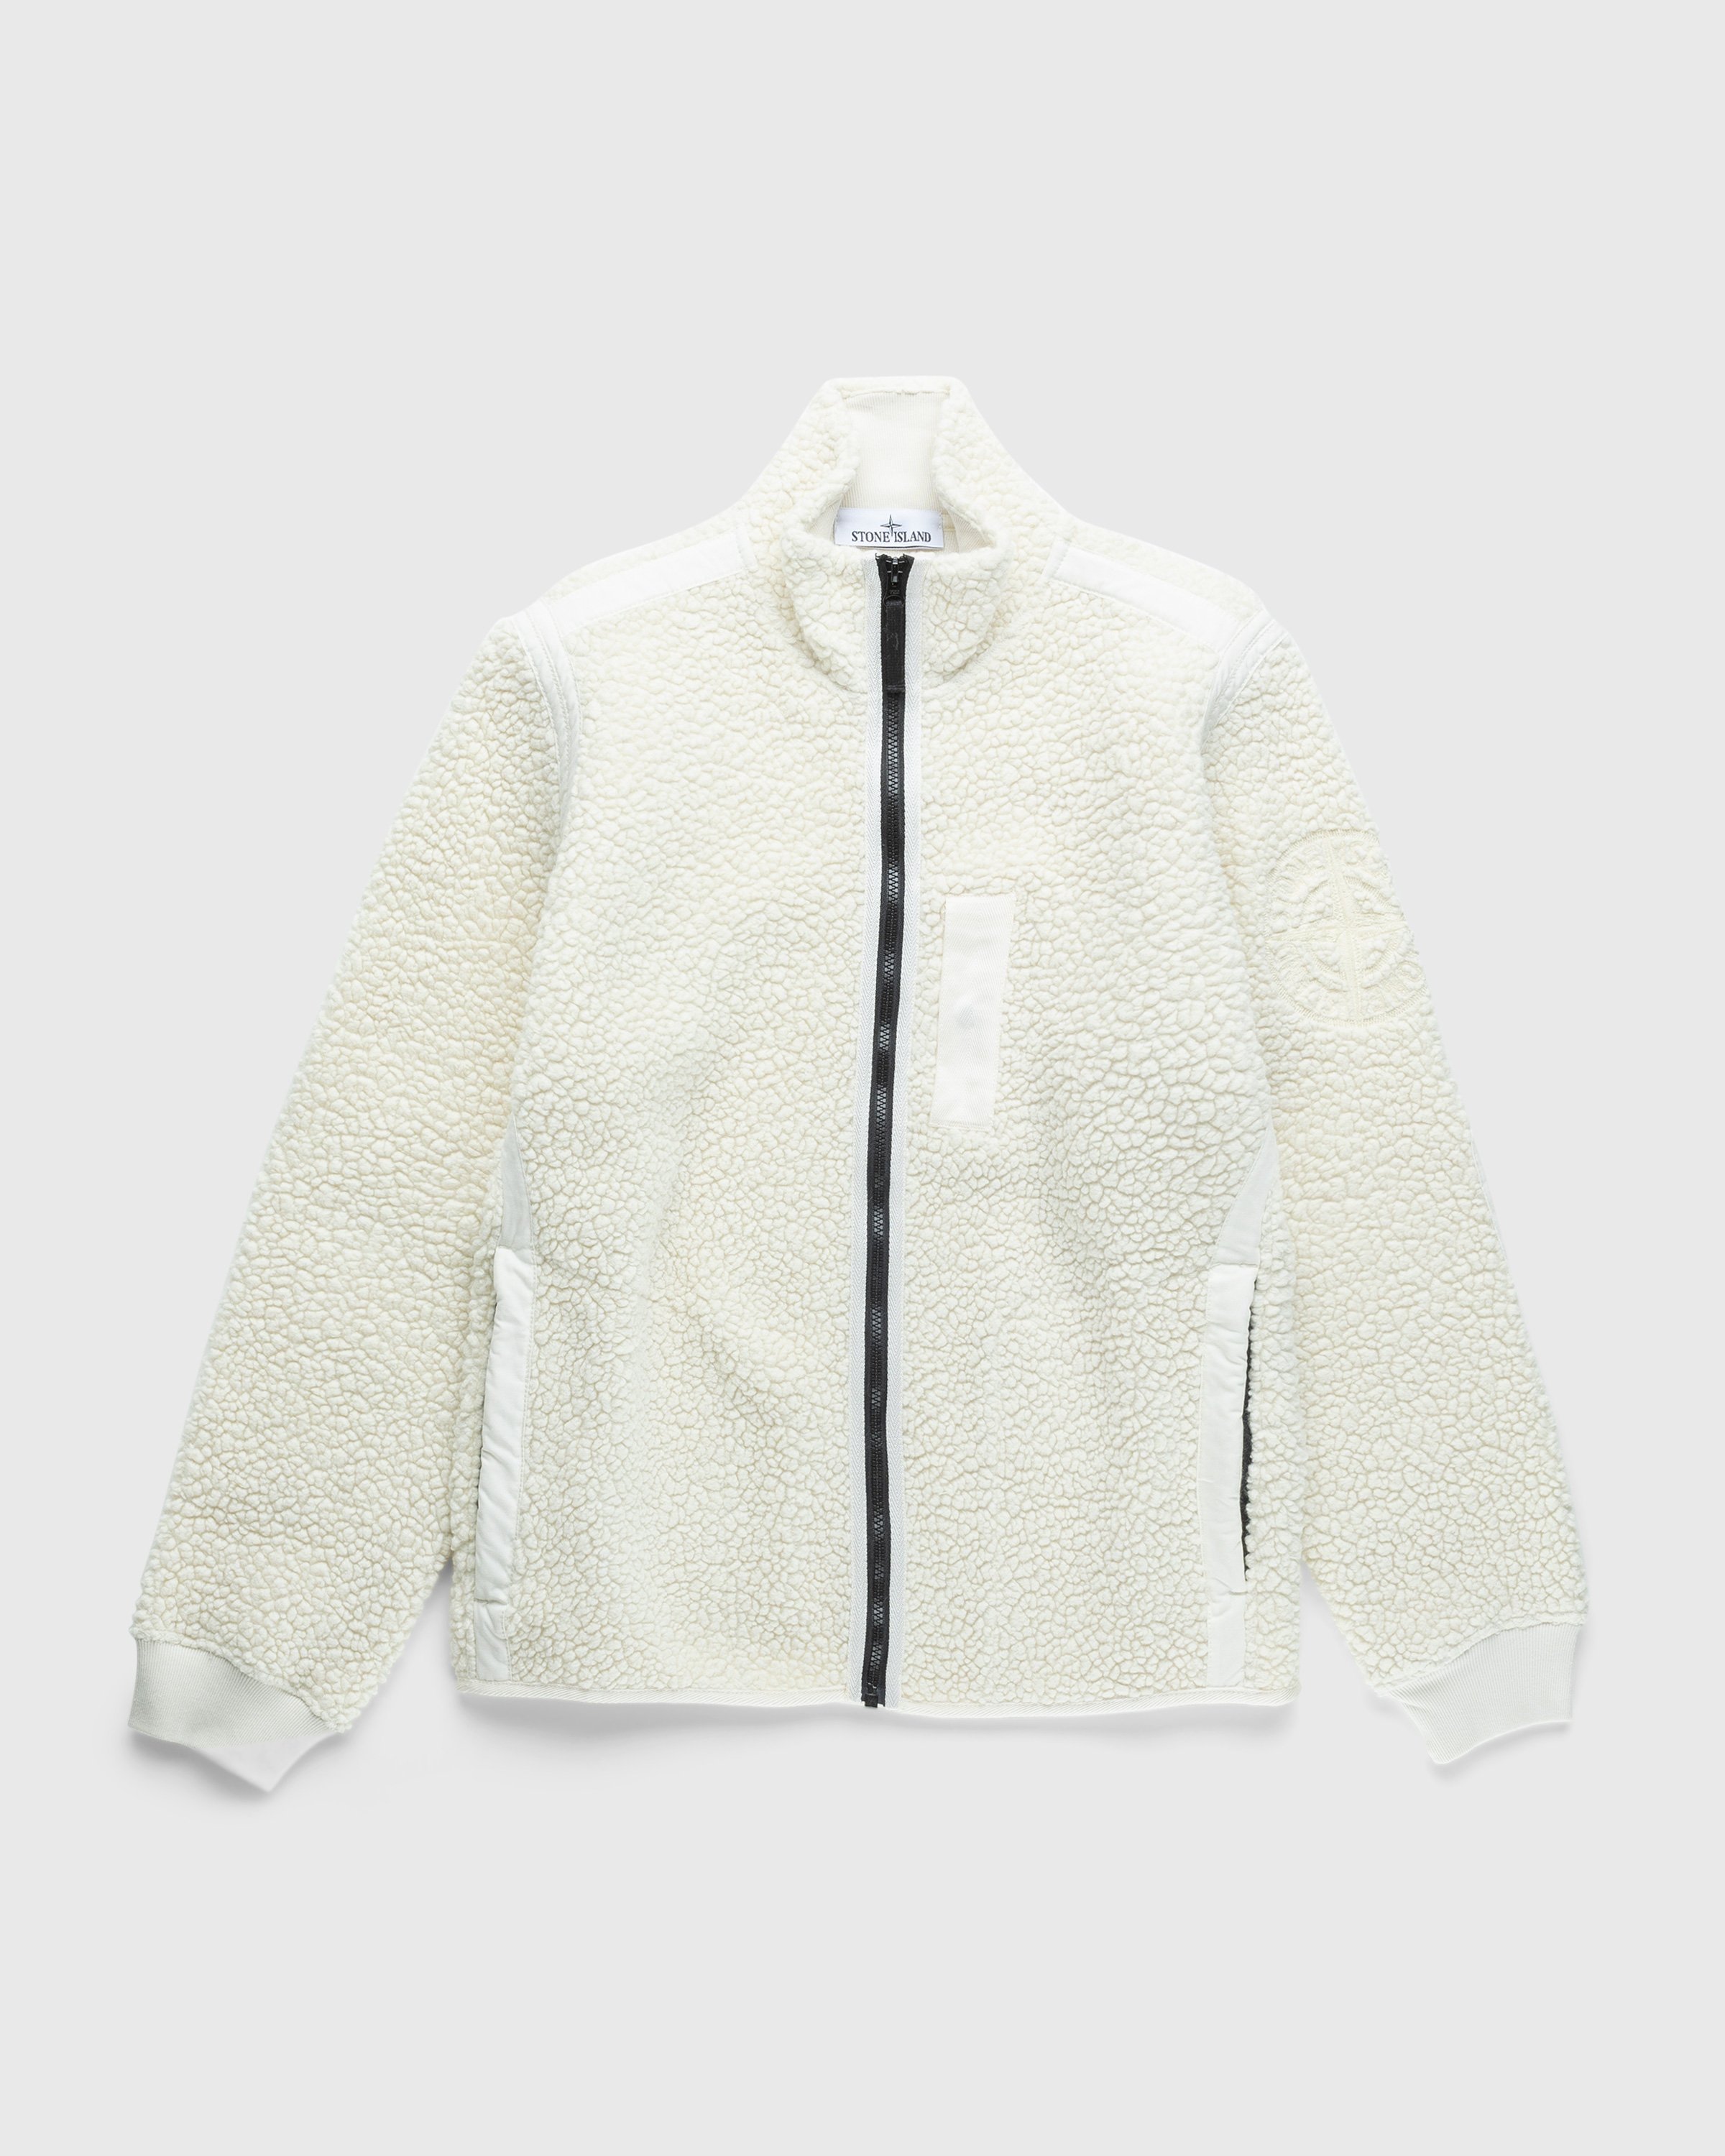 Stone Island - Wool Track Jacket Natural - Clothing - Beige - Image 1